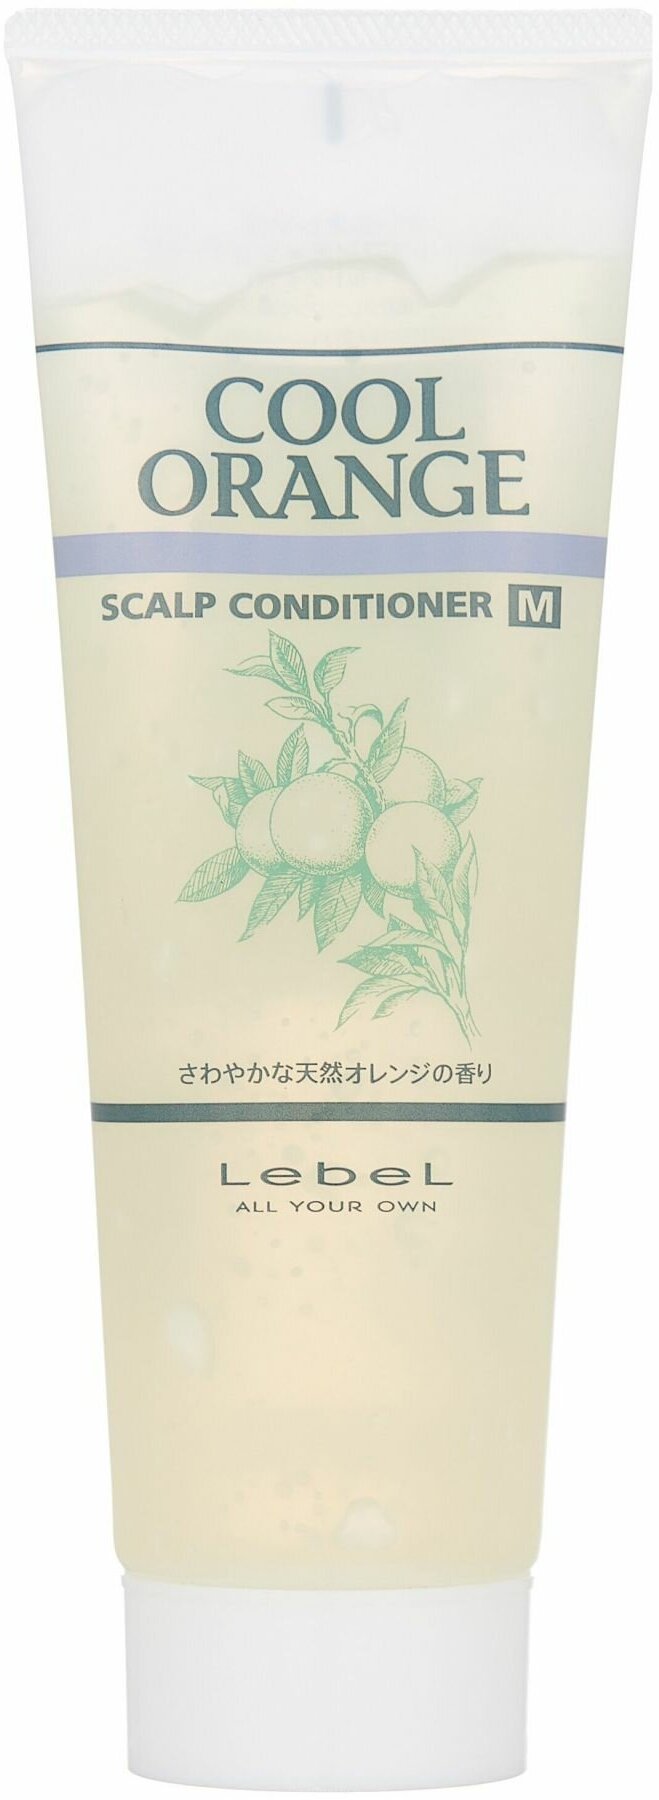 Lebel Cool Orange Scalp Conditioner M Очиститель для сухой кожи головы "Холодный Апельсин", 240 г